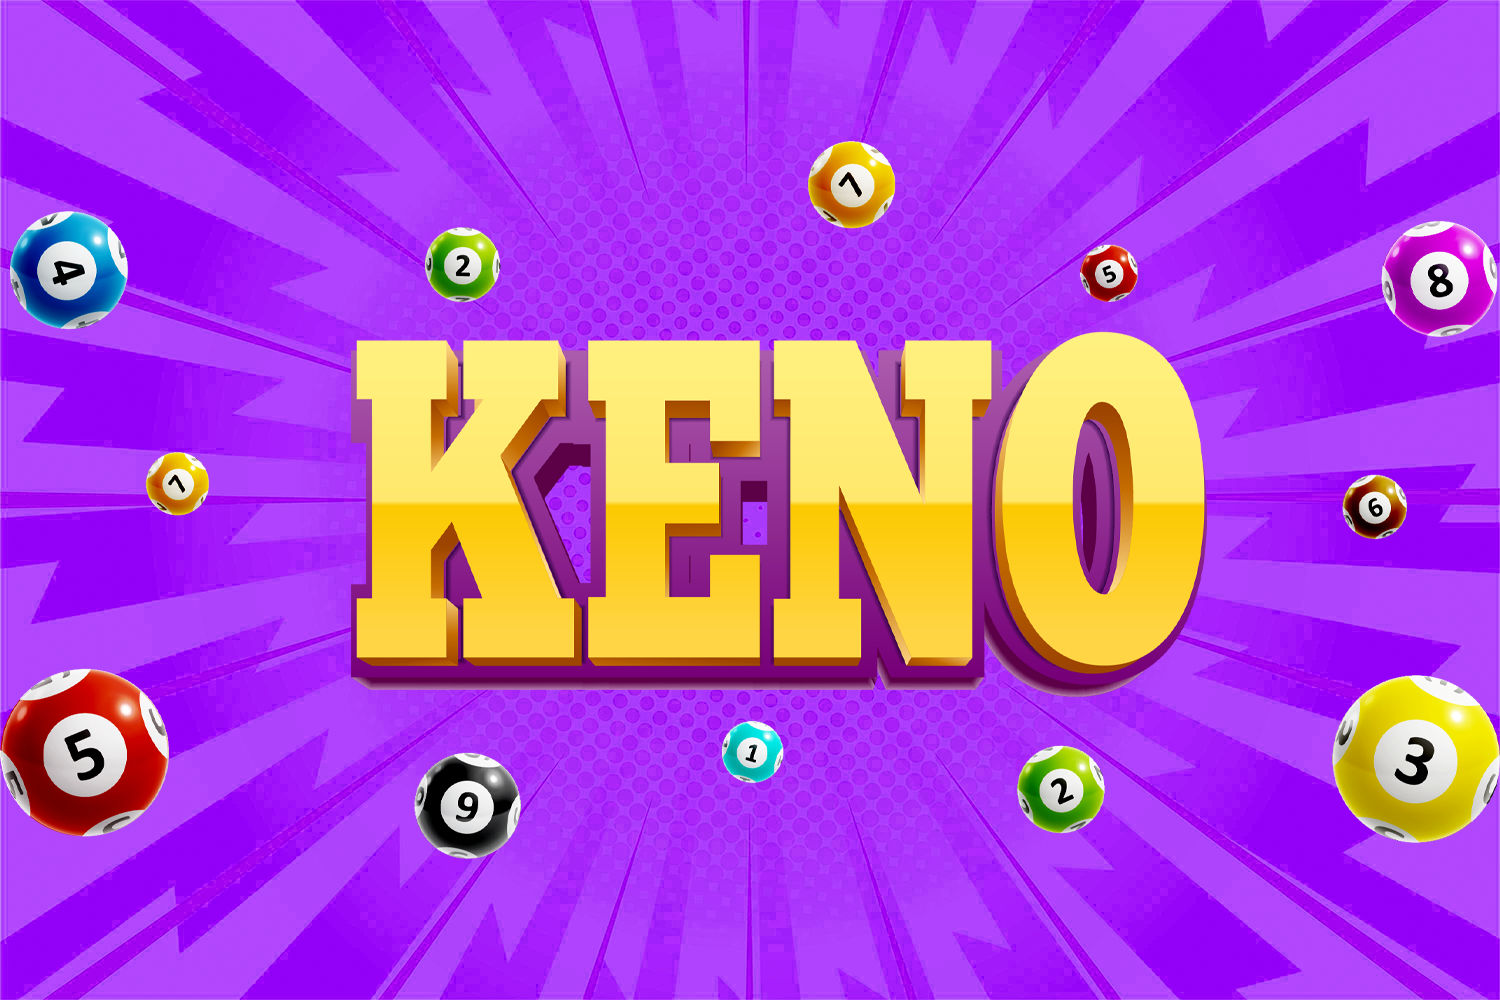 How to play online keno rfuekghn